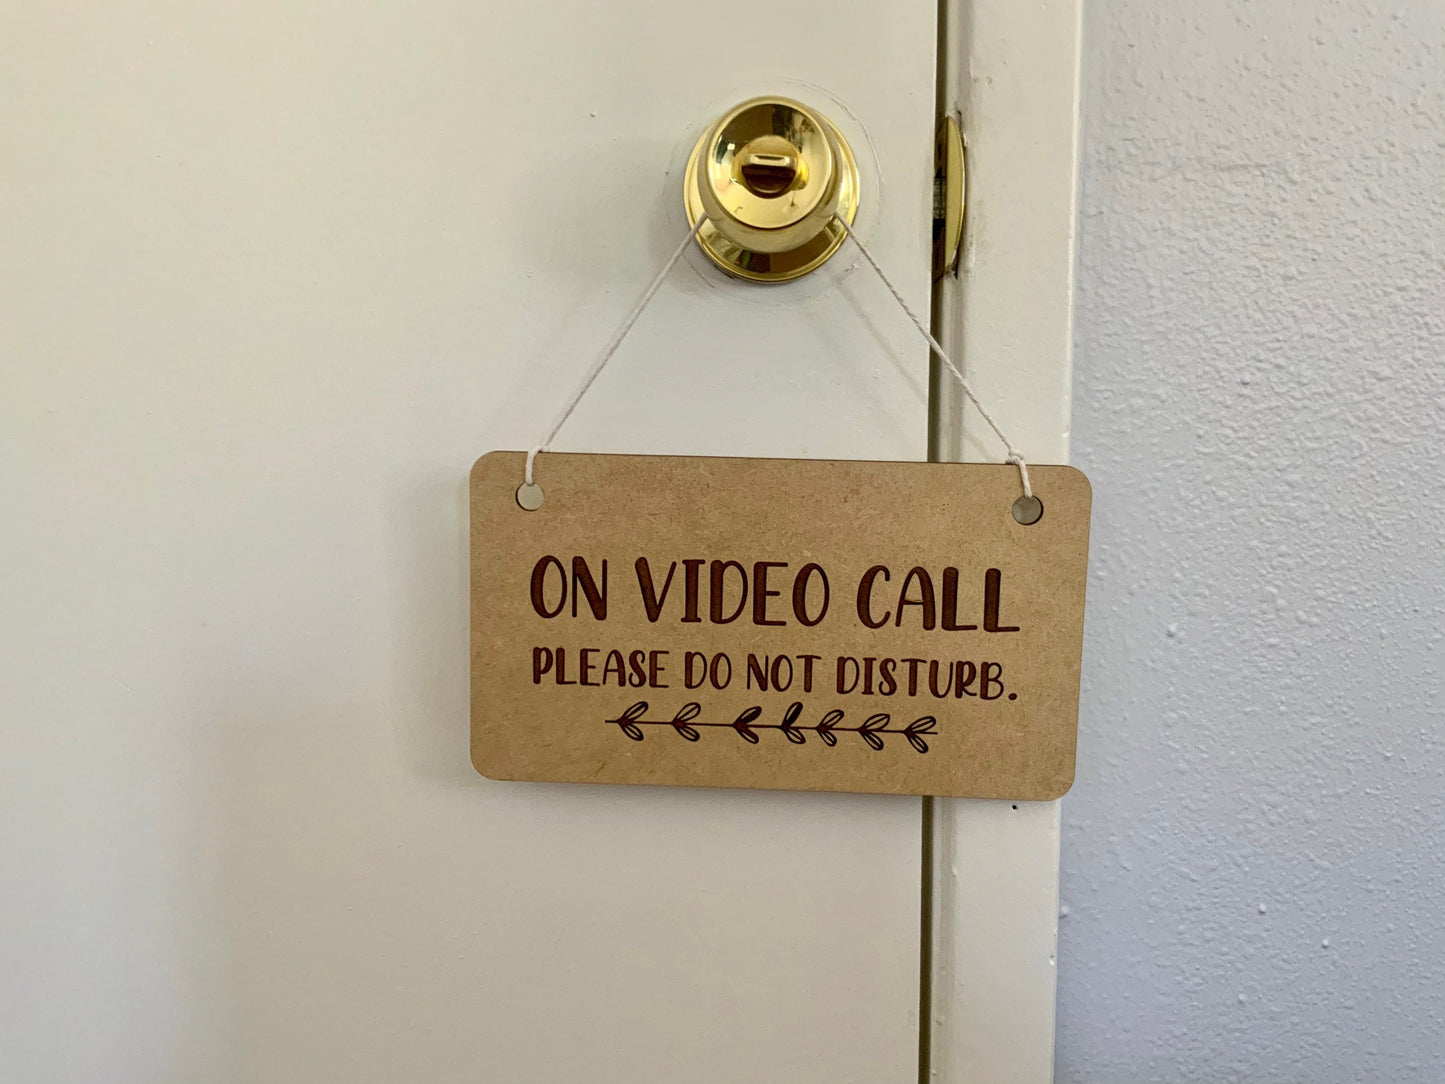 Do not disturb sign